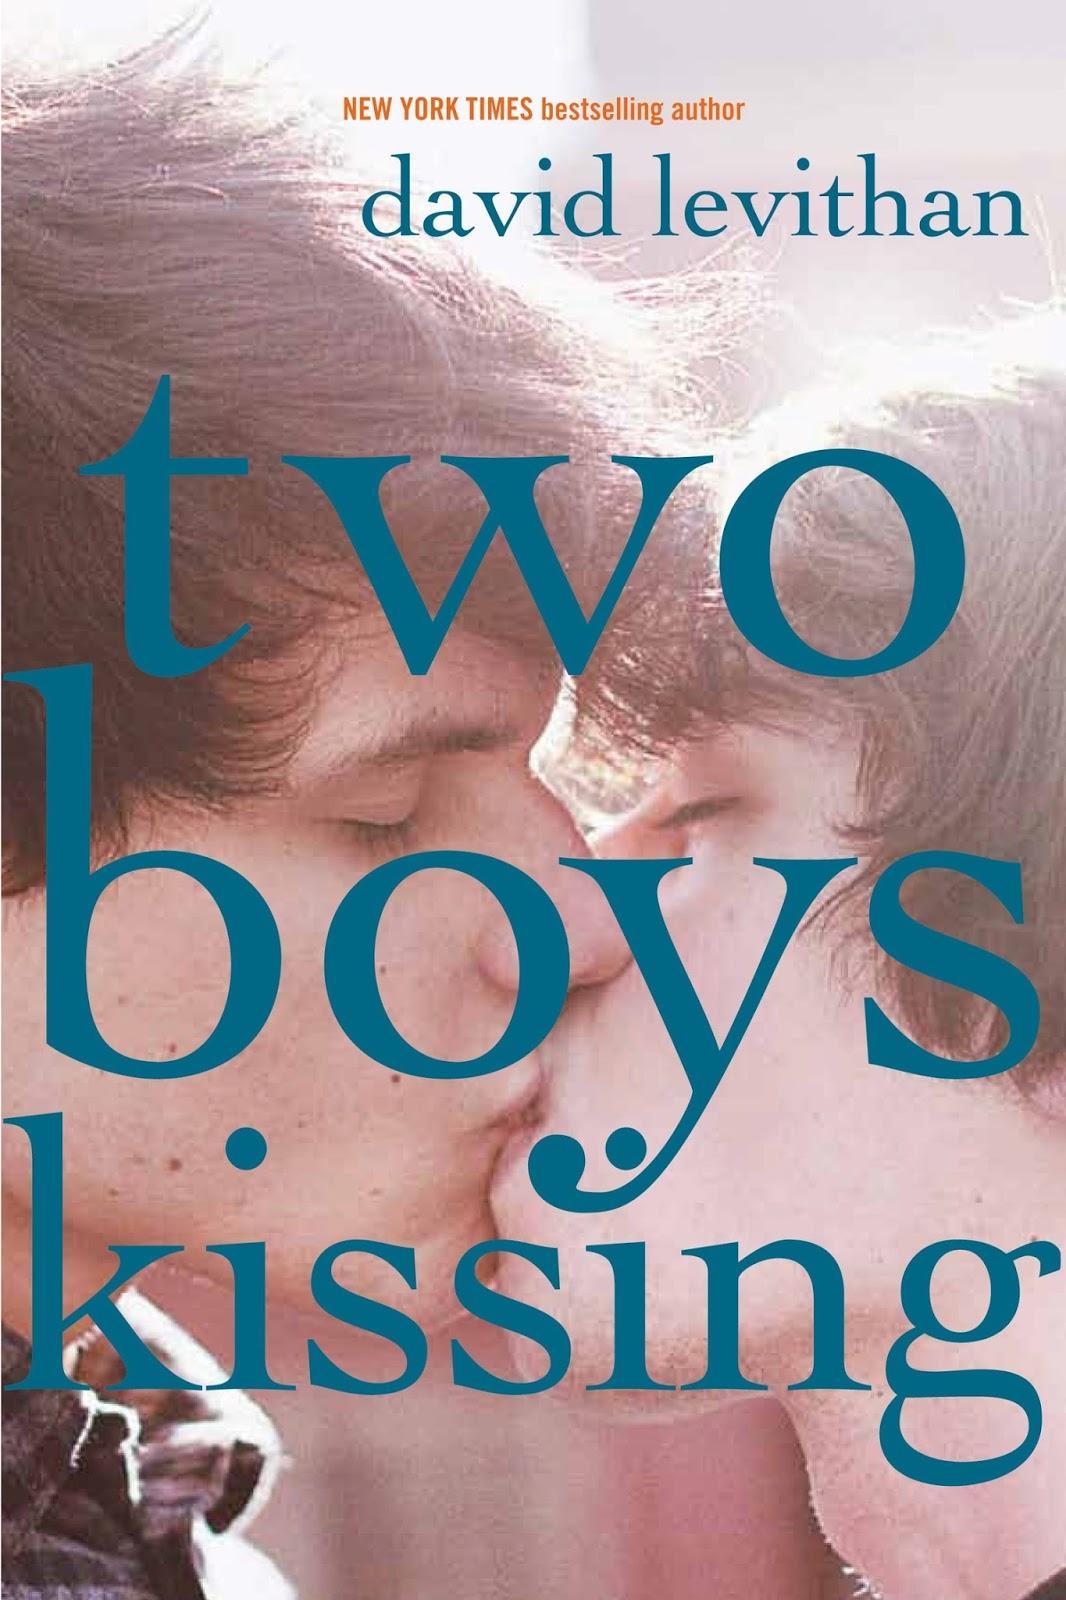 Two Boys Kissing (2013)